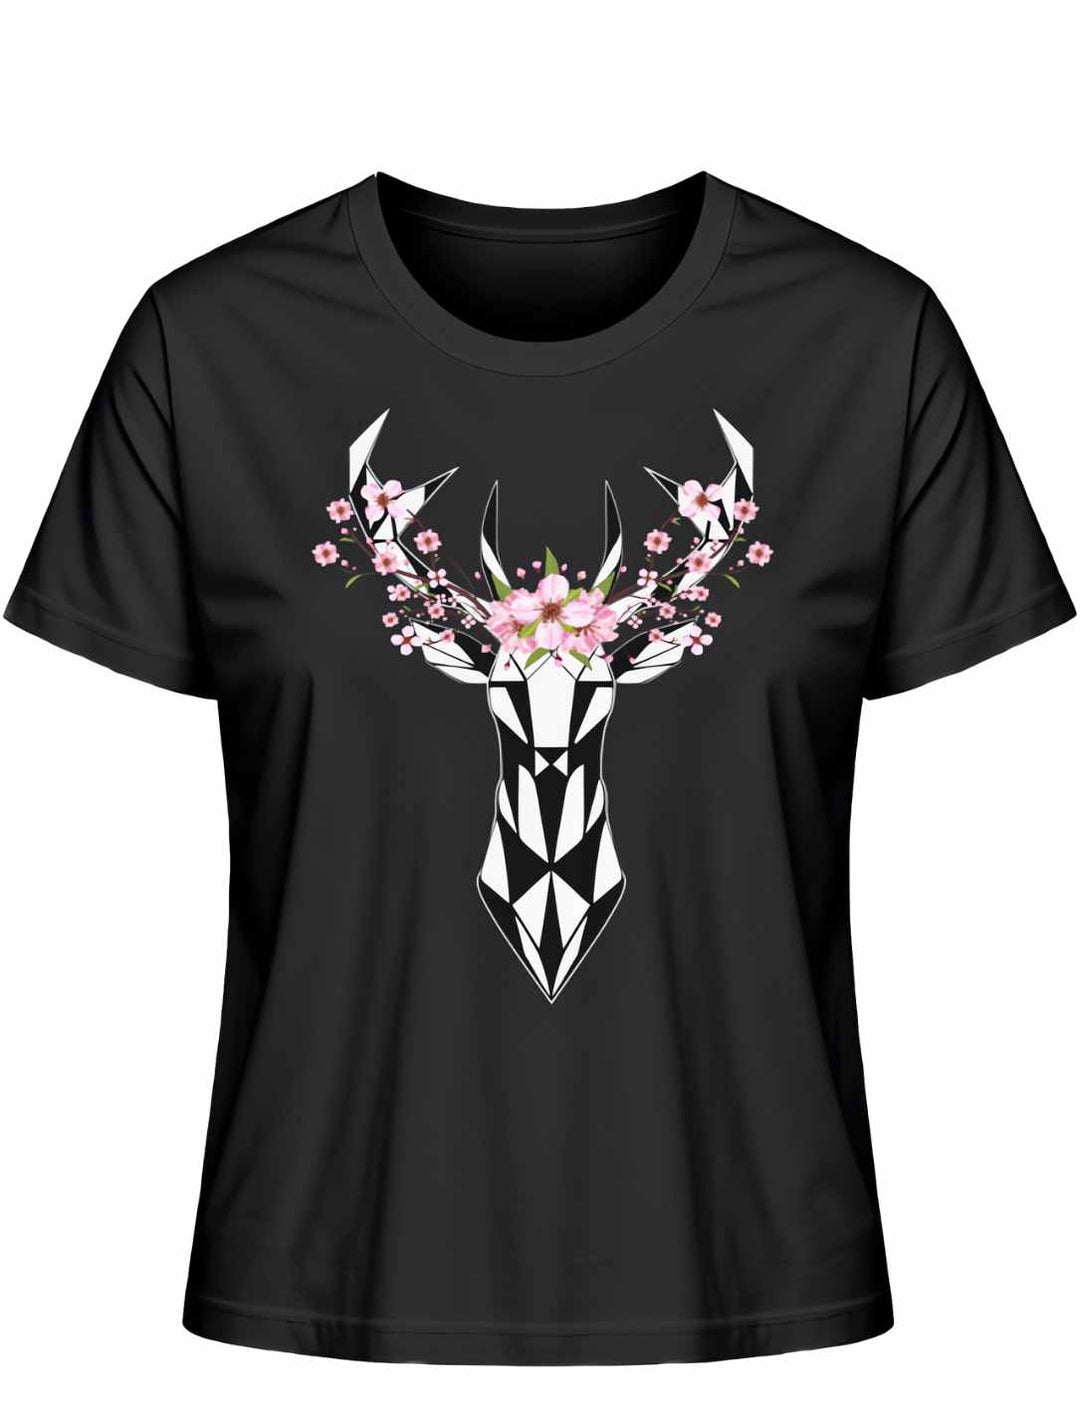 "Sakura Deer" Damen-T-Shirt in Schwarz, flach liegend auf weißem Hintergrund, mit einem eleganten, von der japanischen Kirschblüte inspirierten Hirschmotiv.